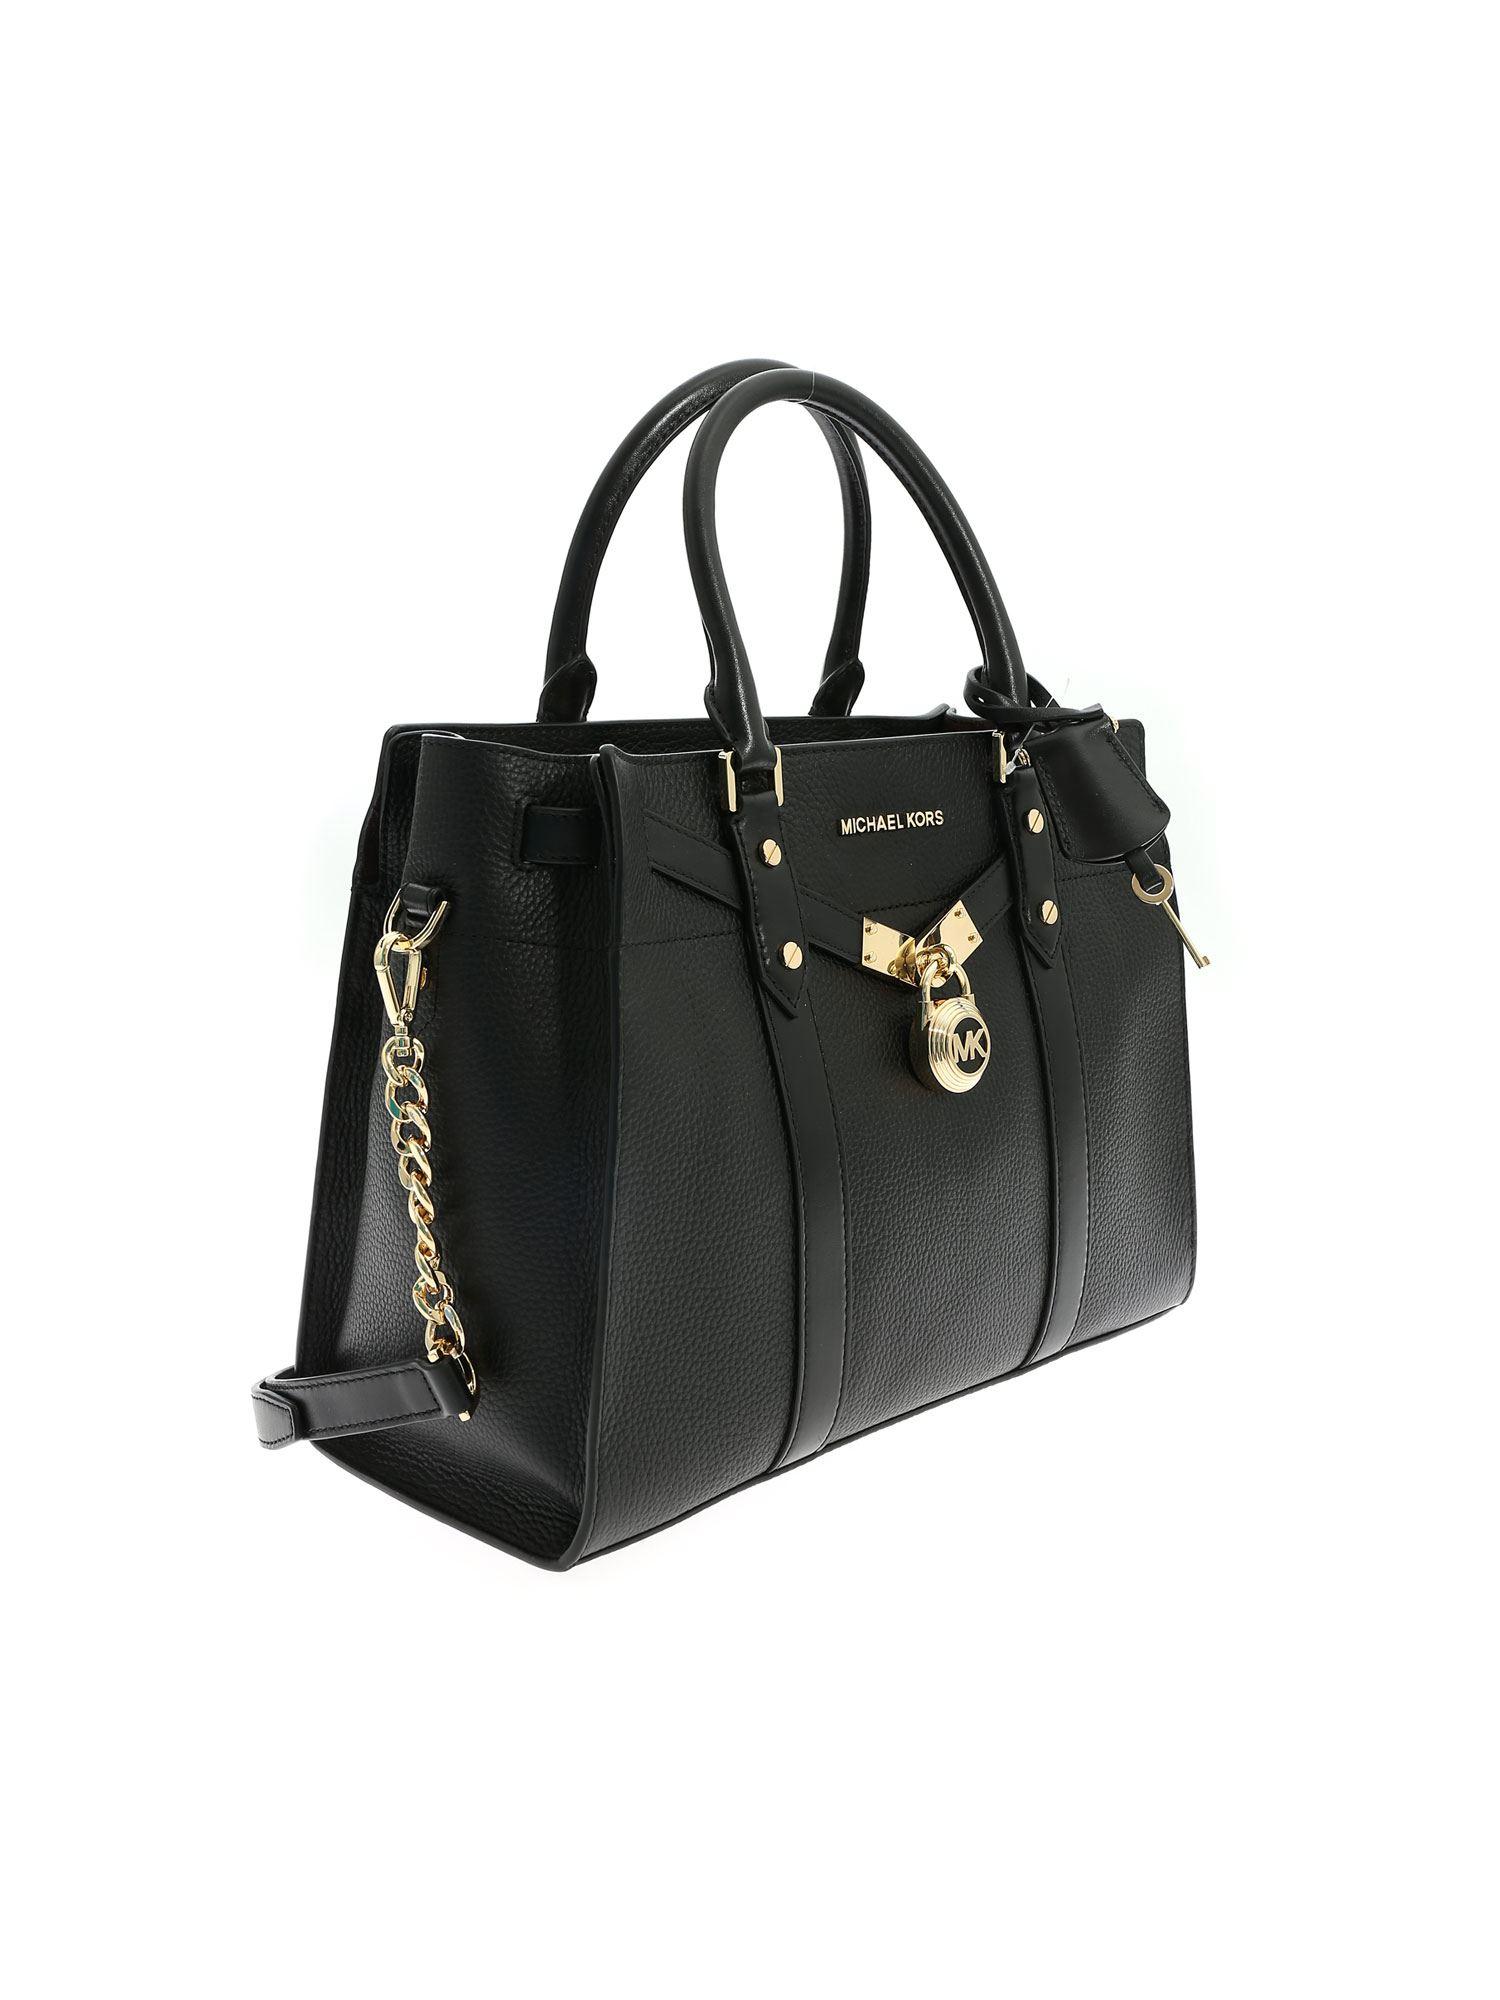 Michael Kors Leather Hamilton Nouveau Large Handbag in Black - Lyst